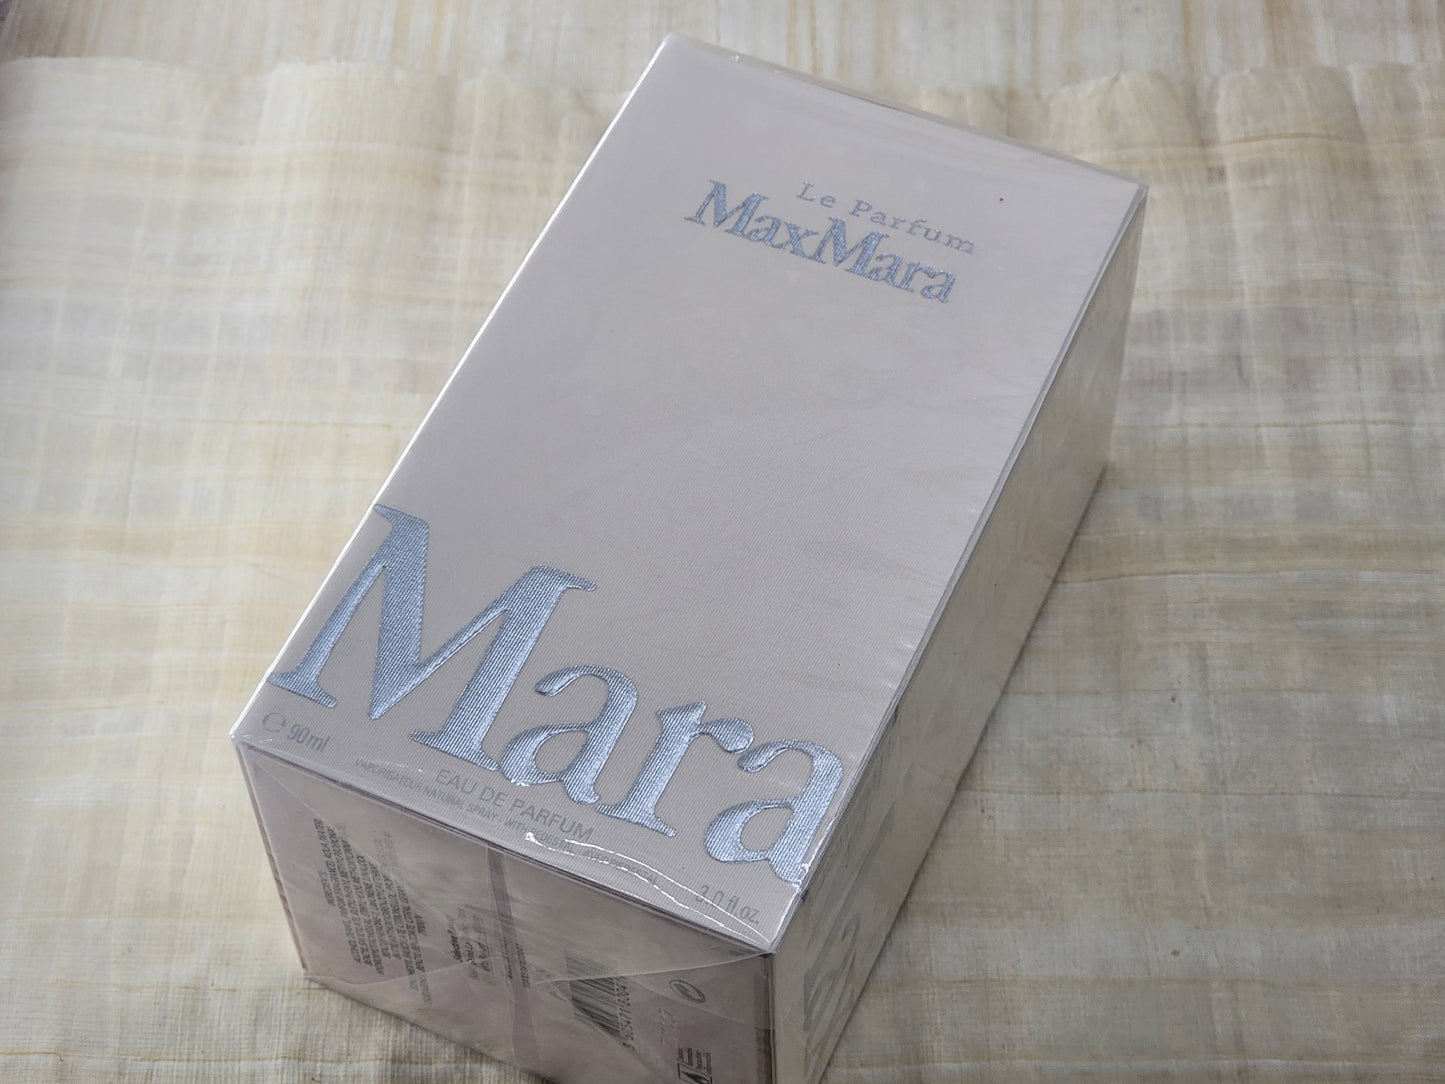 Le Parfum Max Mara for women EDP Spray 90 ml 3 oz OR 50 ml 1.7 oz, Vintage, Rare, Sealed